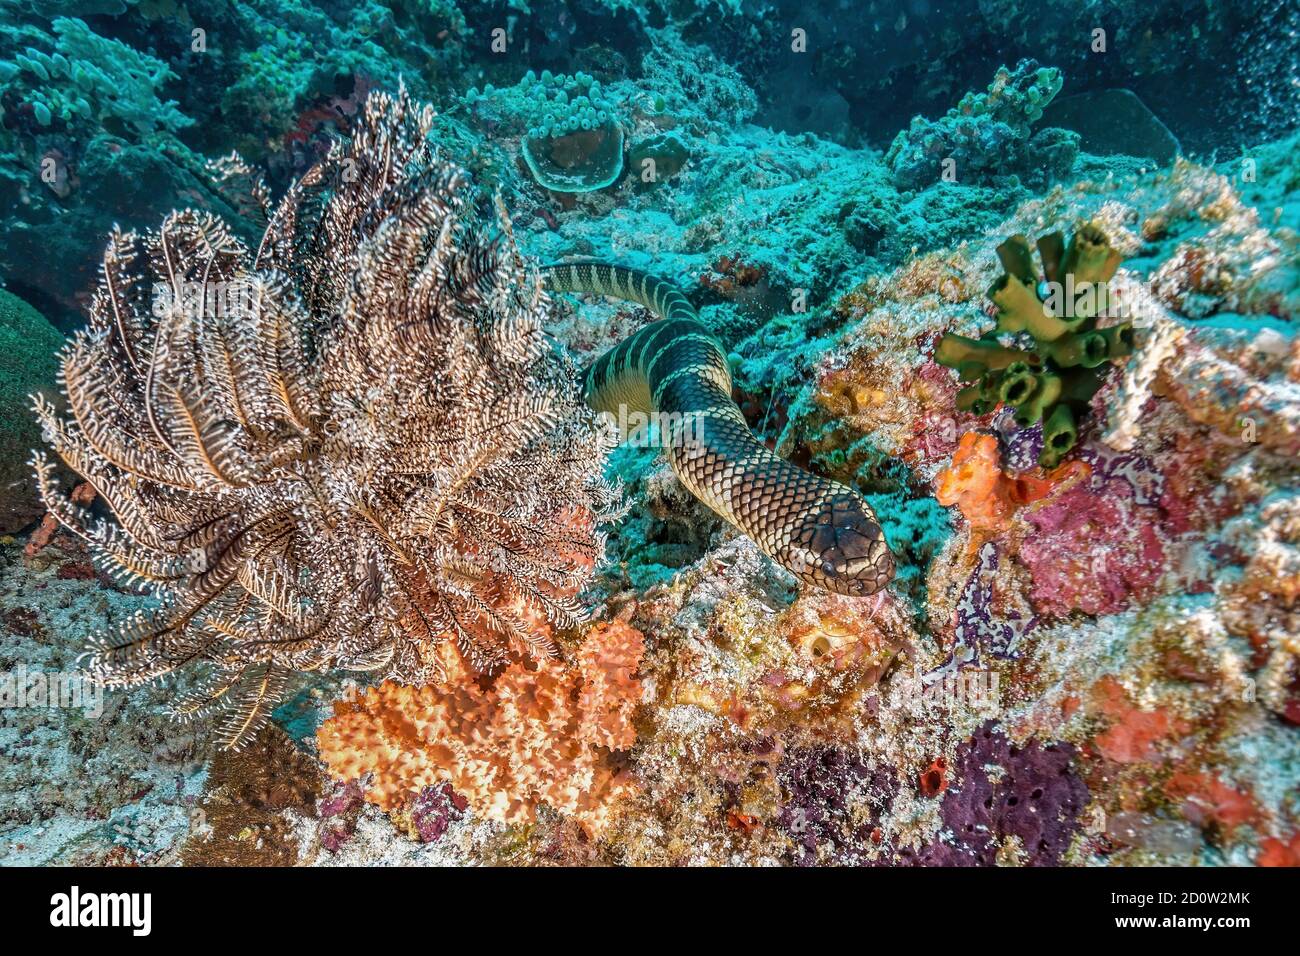 Colubrine Sea krait (Laticauda colubrina) nella barriera corallina, Isola di Apo, Filippine, Asia Foto Stock